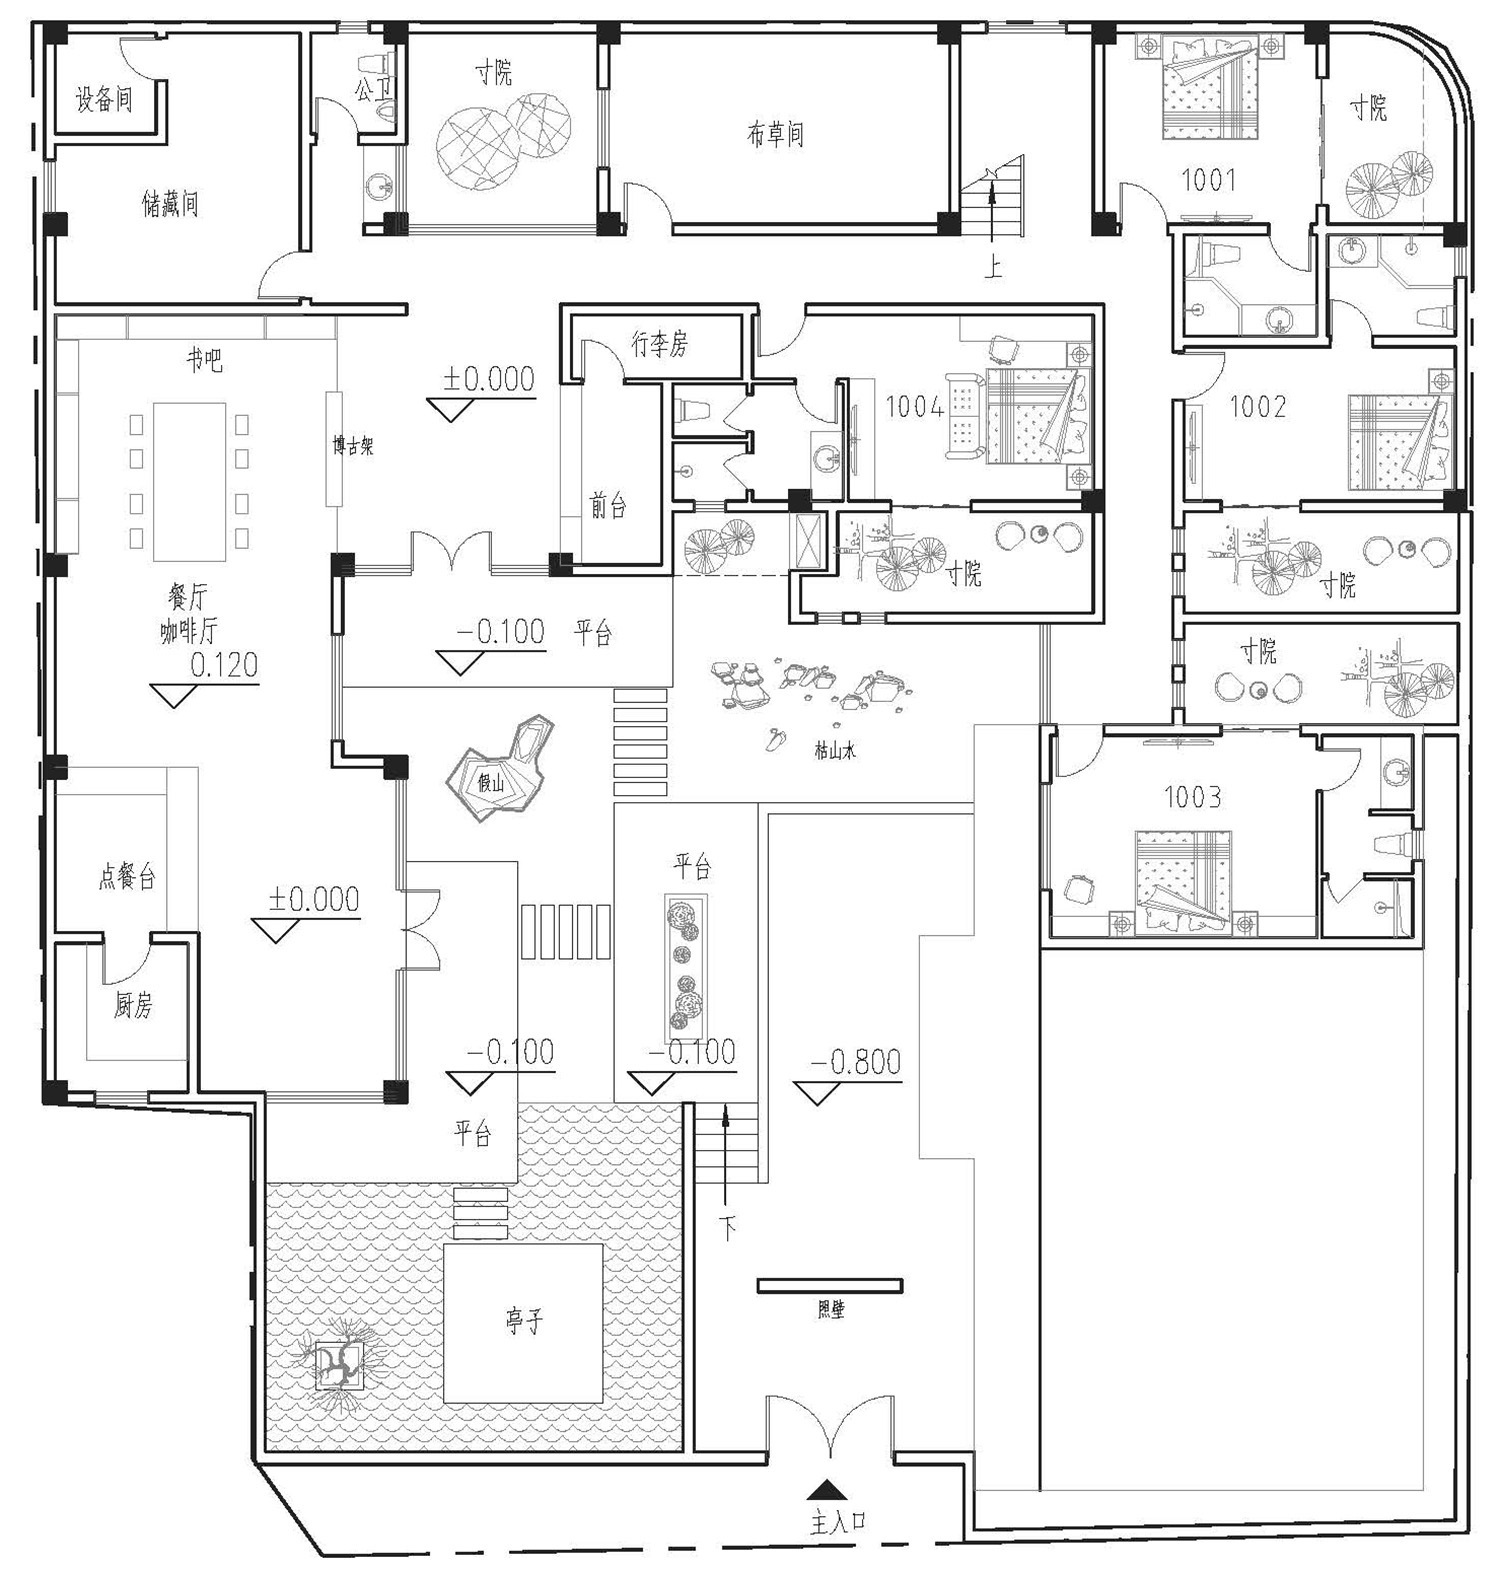 一层平面设计图:餐厅,客厅,厨房,储物间,卧室